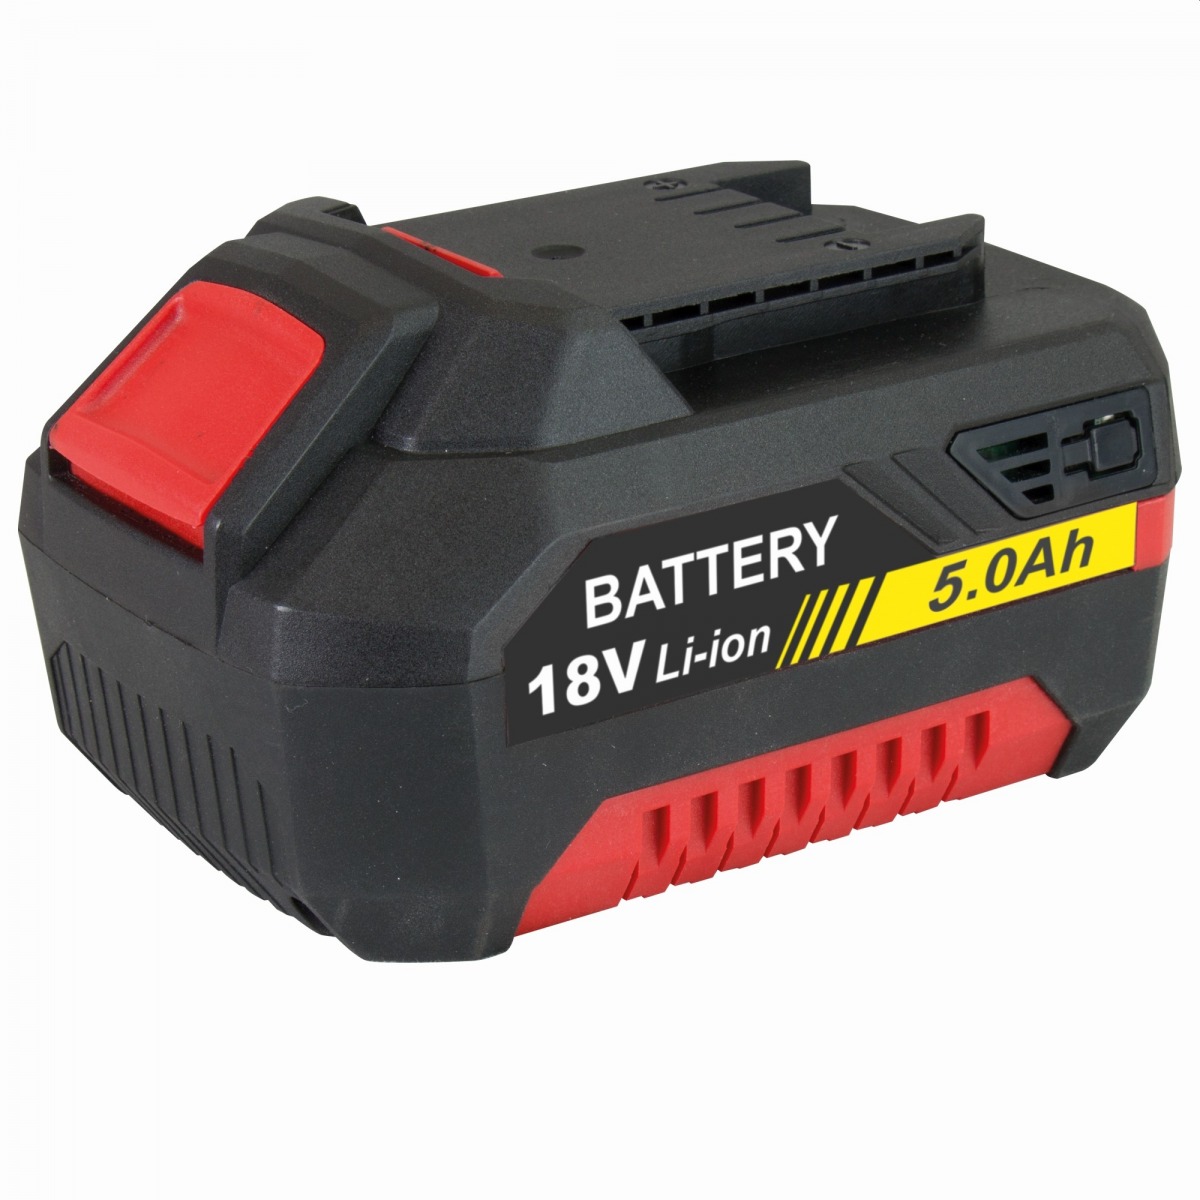 Stayer 12.589 Batería de 5Ah compatible con toda la Gama L20 de STAYER STA-12.589 | BATERÍAS